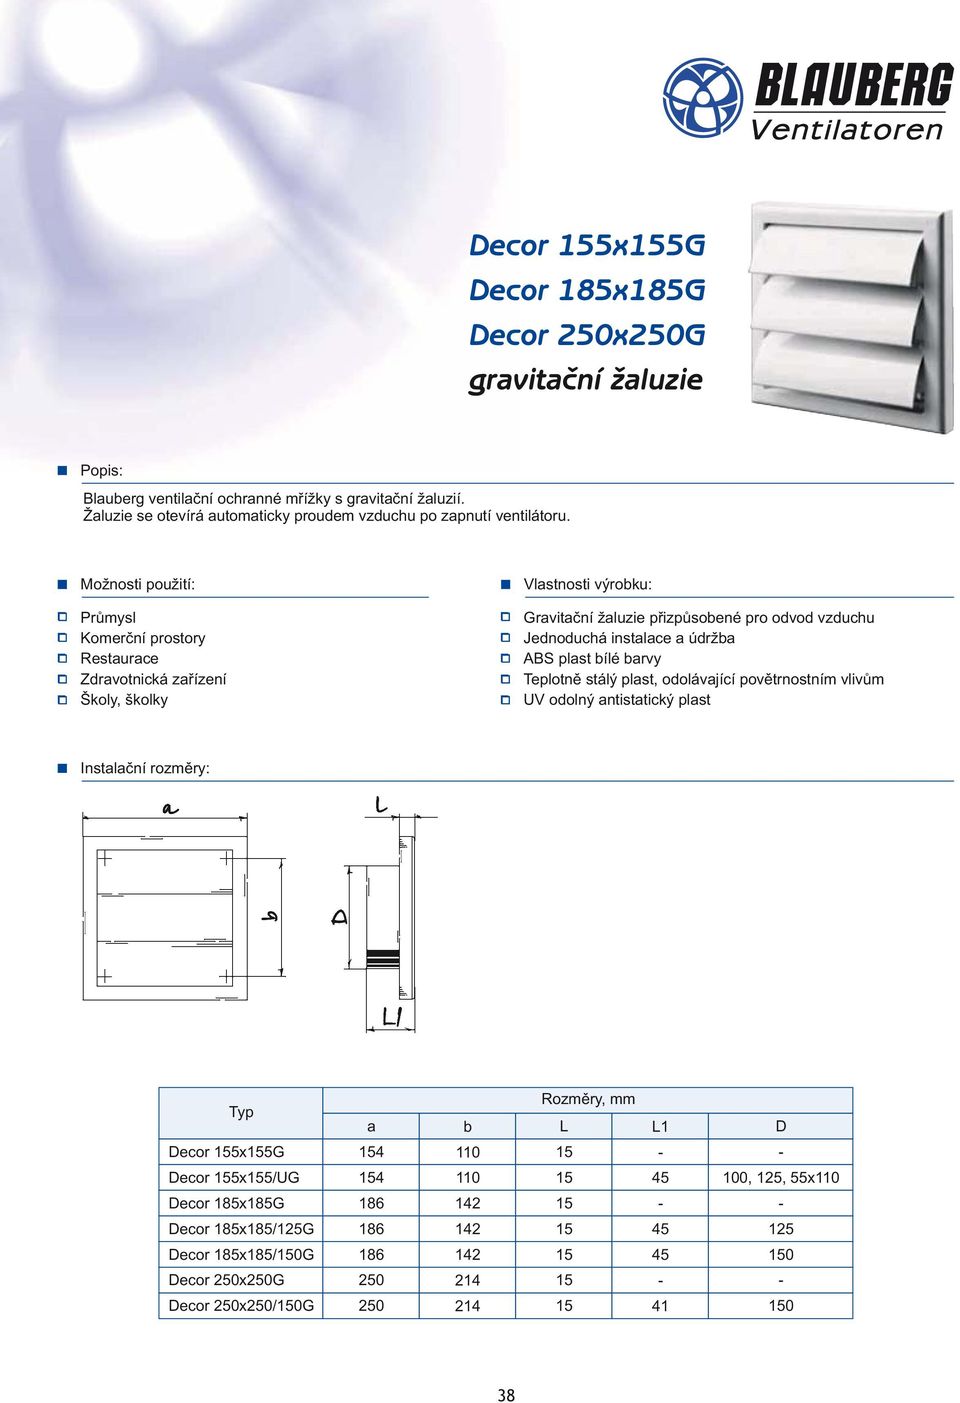 Průmysl Gravitační žaluzie přizpůsobené pro odvod vzduchu Jednoduchá instalace a údržba ABS plast bílé barvy Teplotně stálý